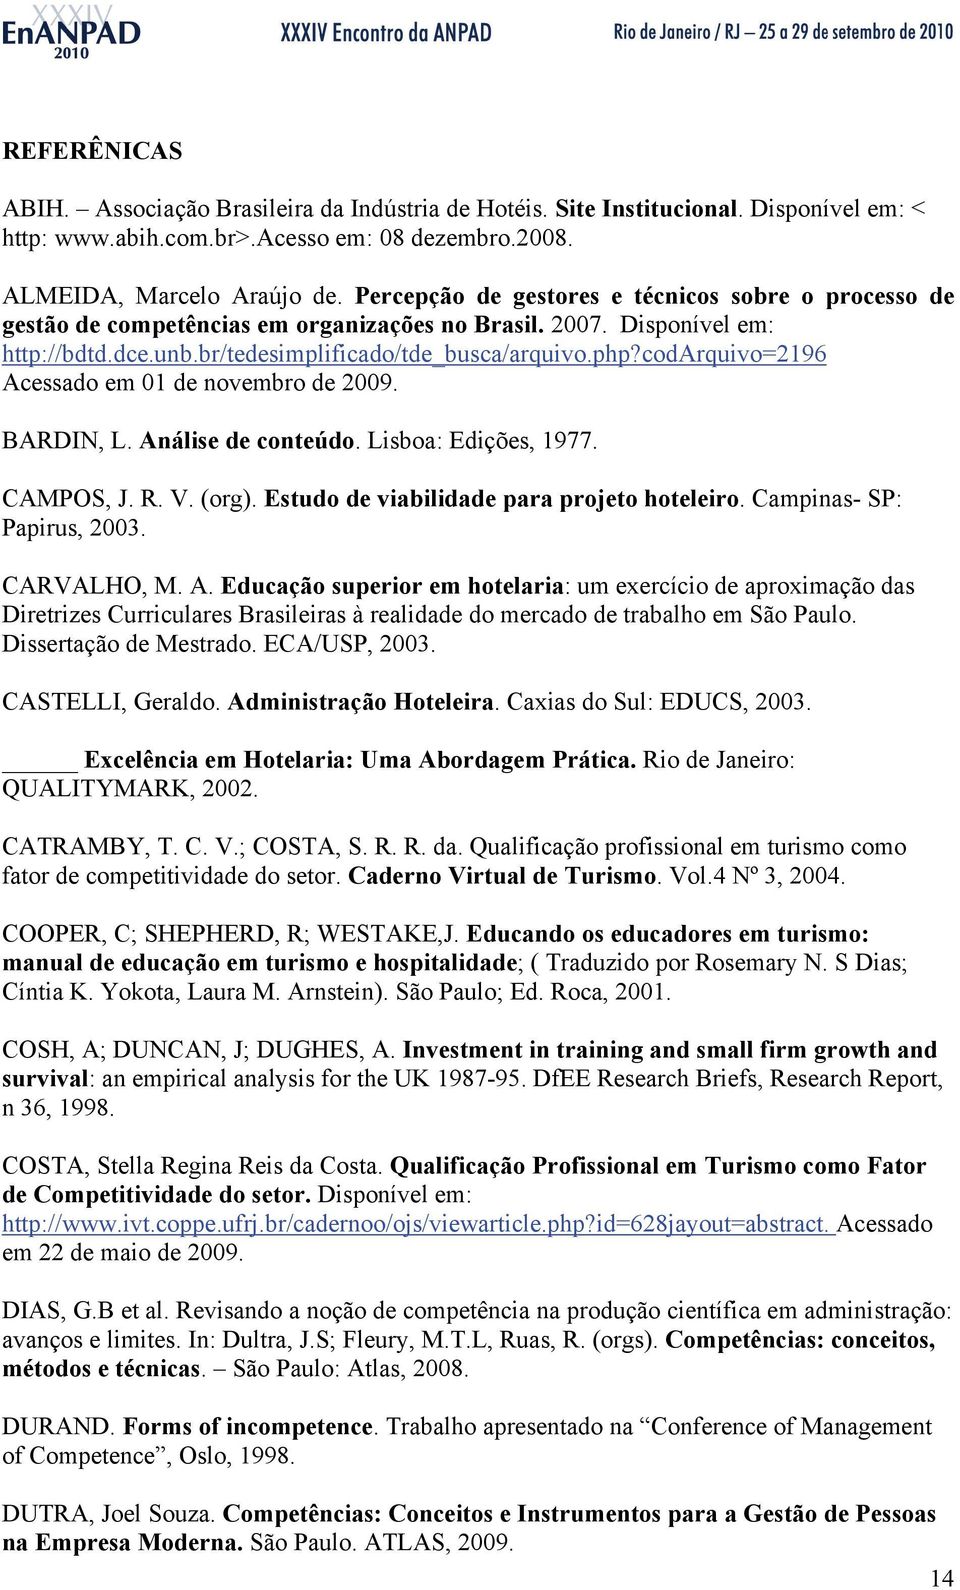 codarquivo=2196 Acessado em 01 de novembro de 2009. BARDIN, L. Análise de conteúdo. Lisboa: Edições, 1977. CAMPOS, J. R. V. (org). Estudo de viabilidade para projeto hoteleiro.